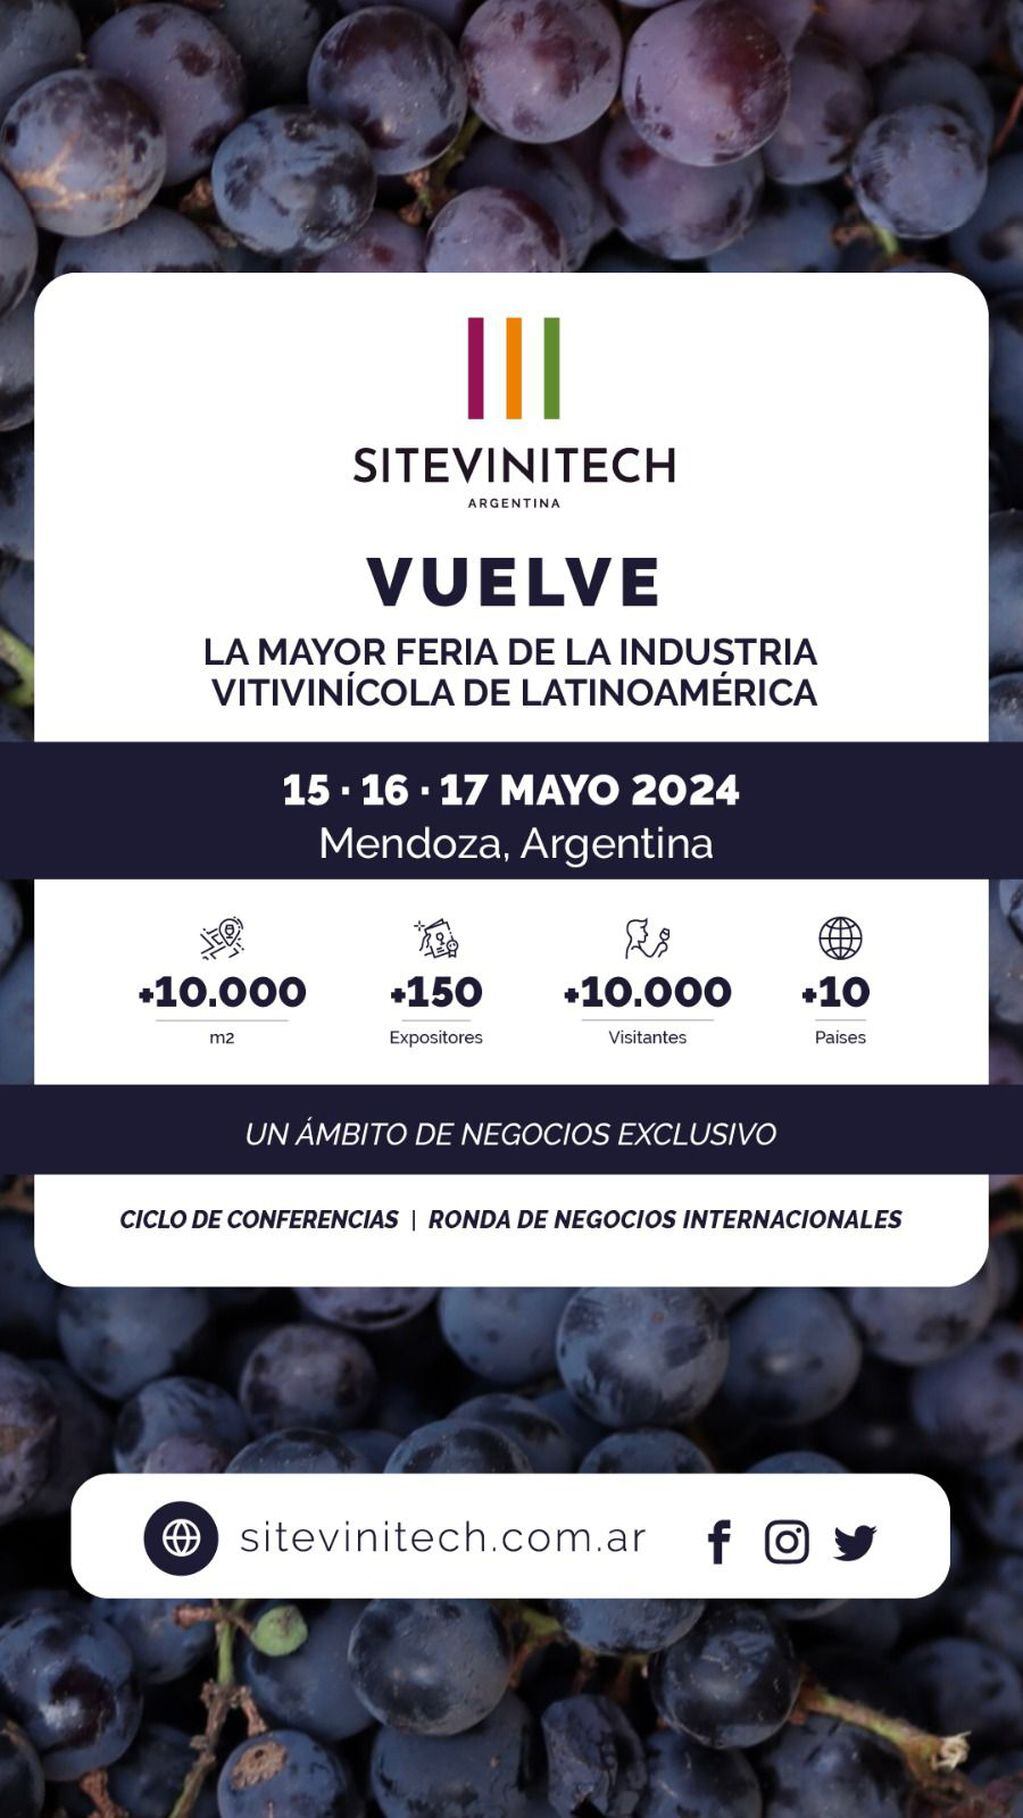 Sitevinitech 2024: cuenta regresiva para la feria de la industria vitivinícola más importante de Latinoamérica.